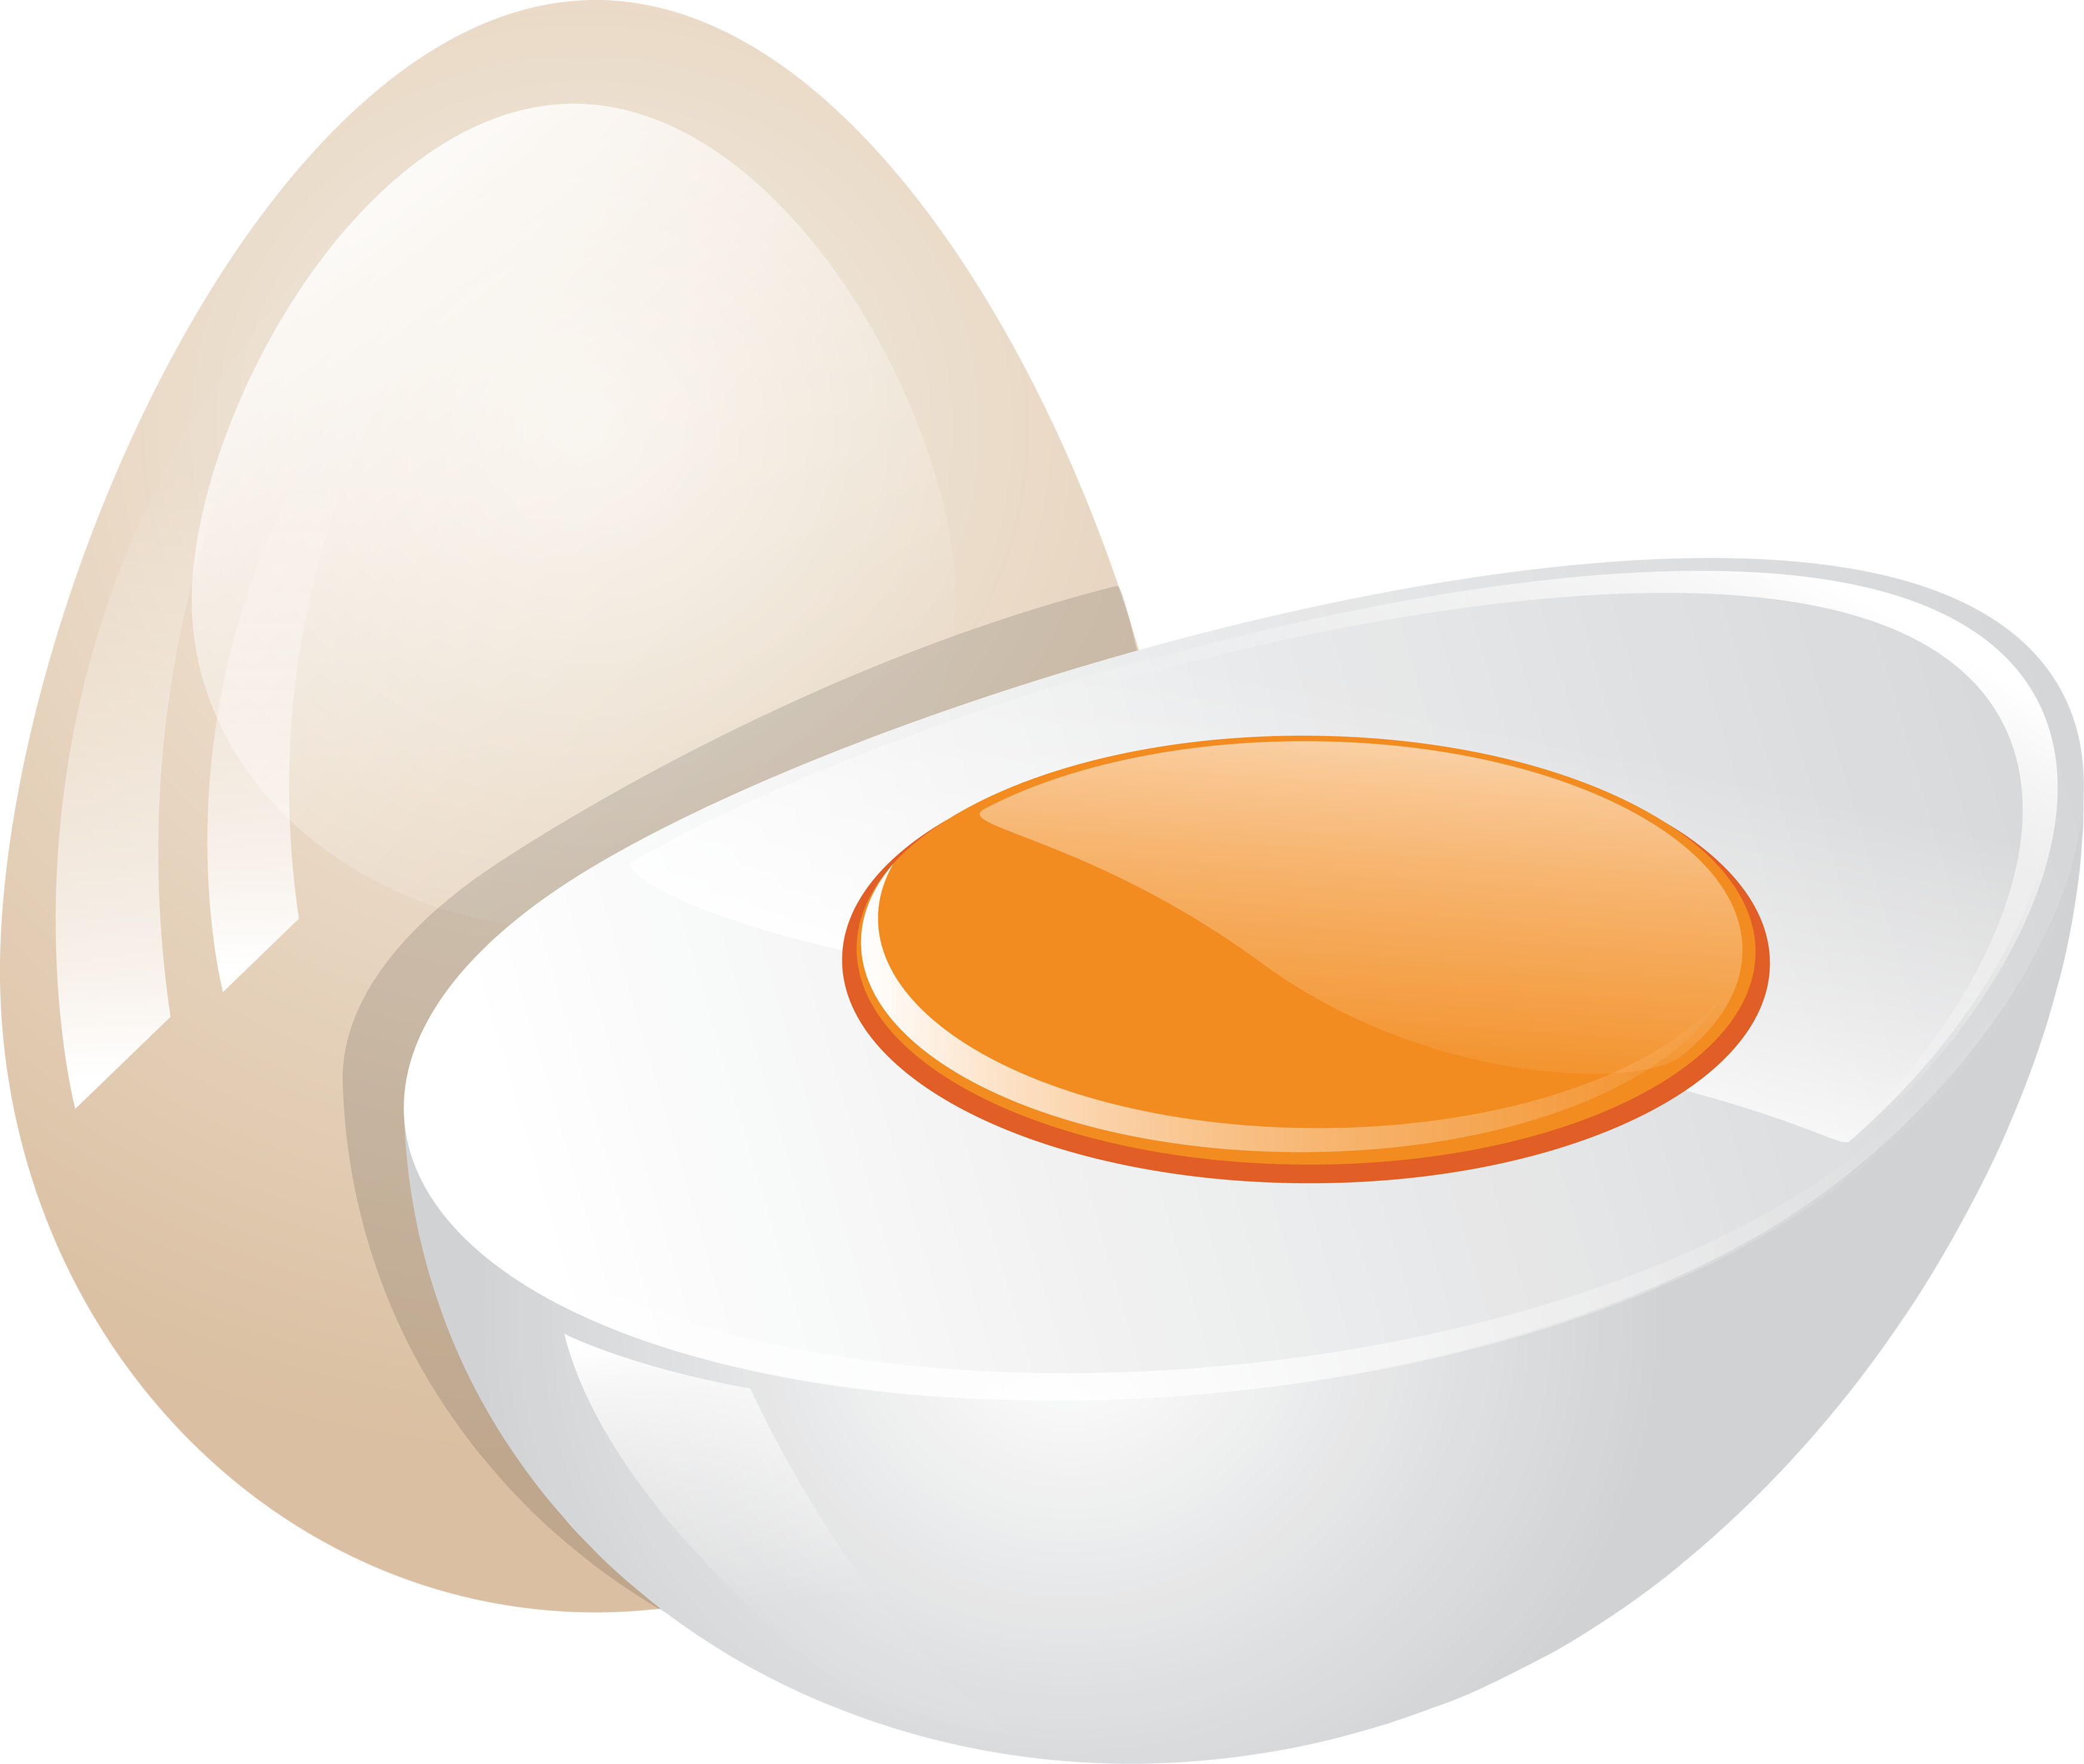 Uovo tagliato a metà